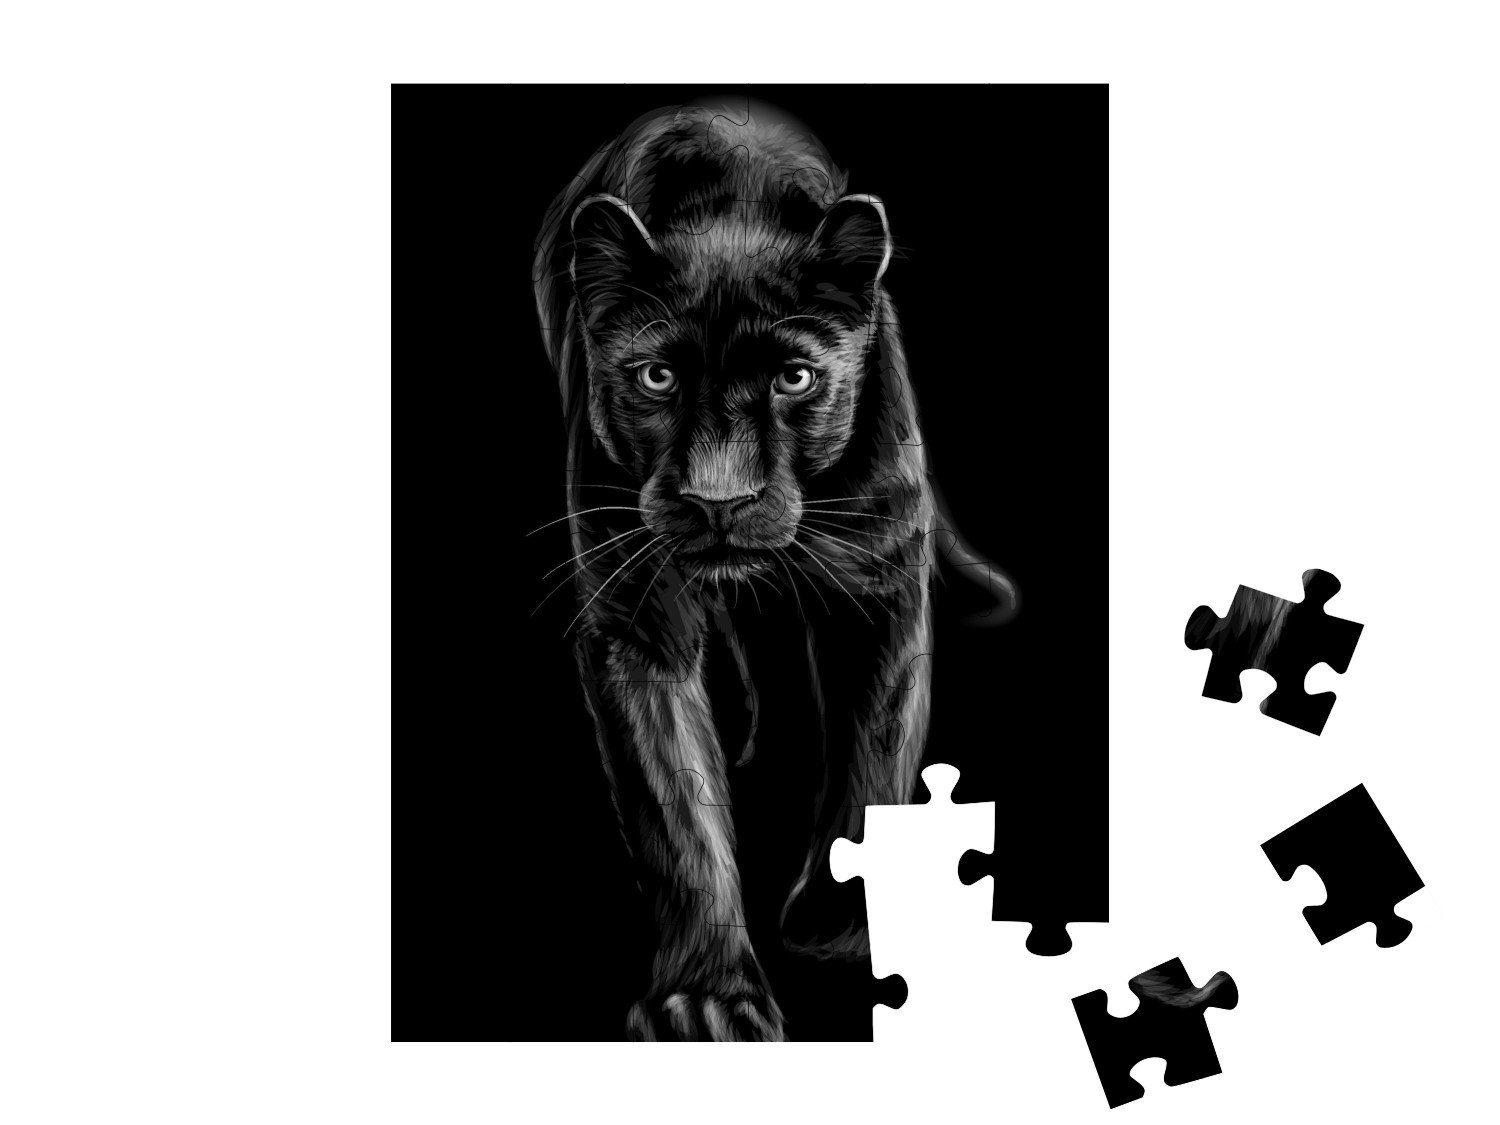 Regenwald puzzleYOU-Kollektionen in skizzenhaftes, puzzleYOU Panther, & Porträt, 48 schwarz-weiß Dschungel Puzzleteile, Puzzle Panther: Tiere